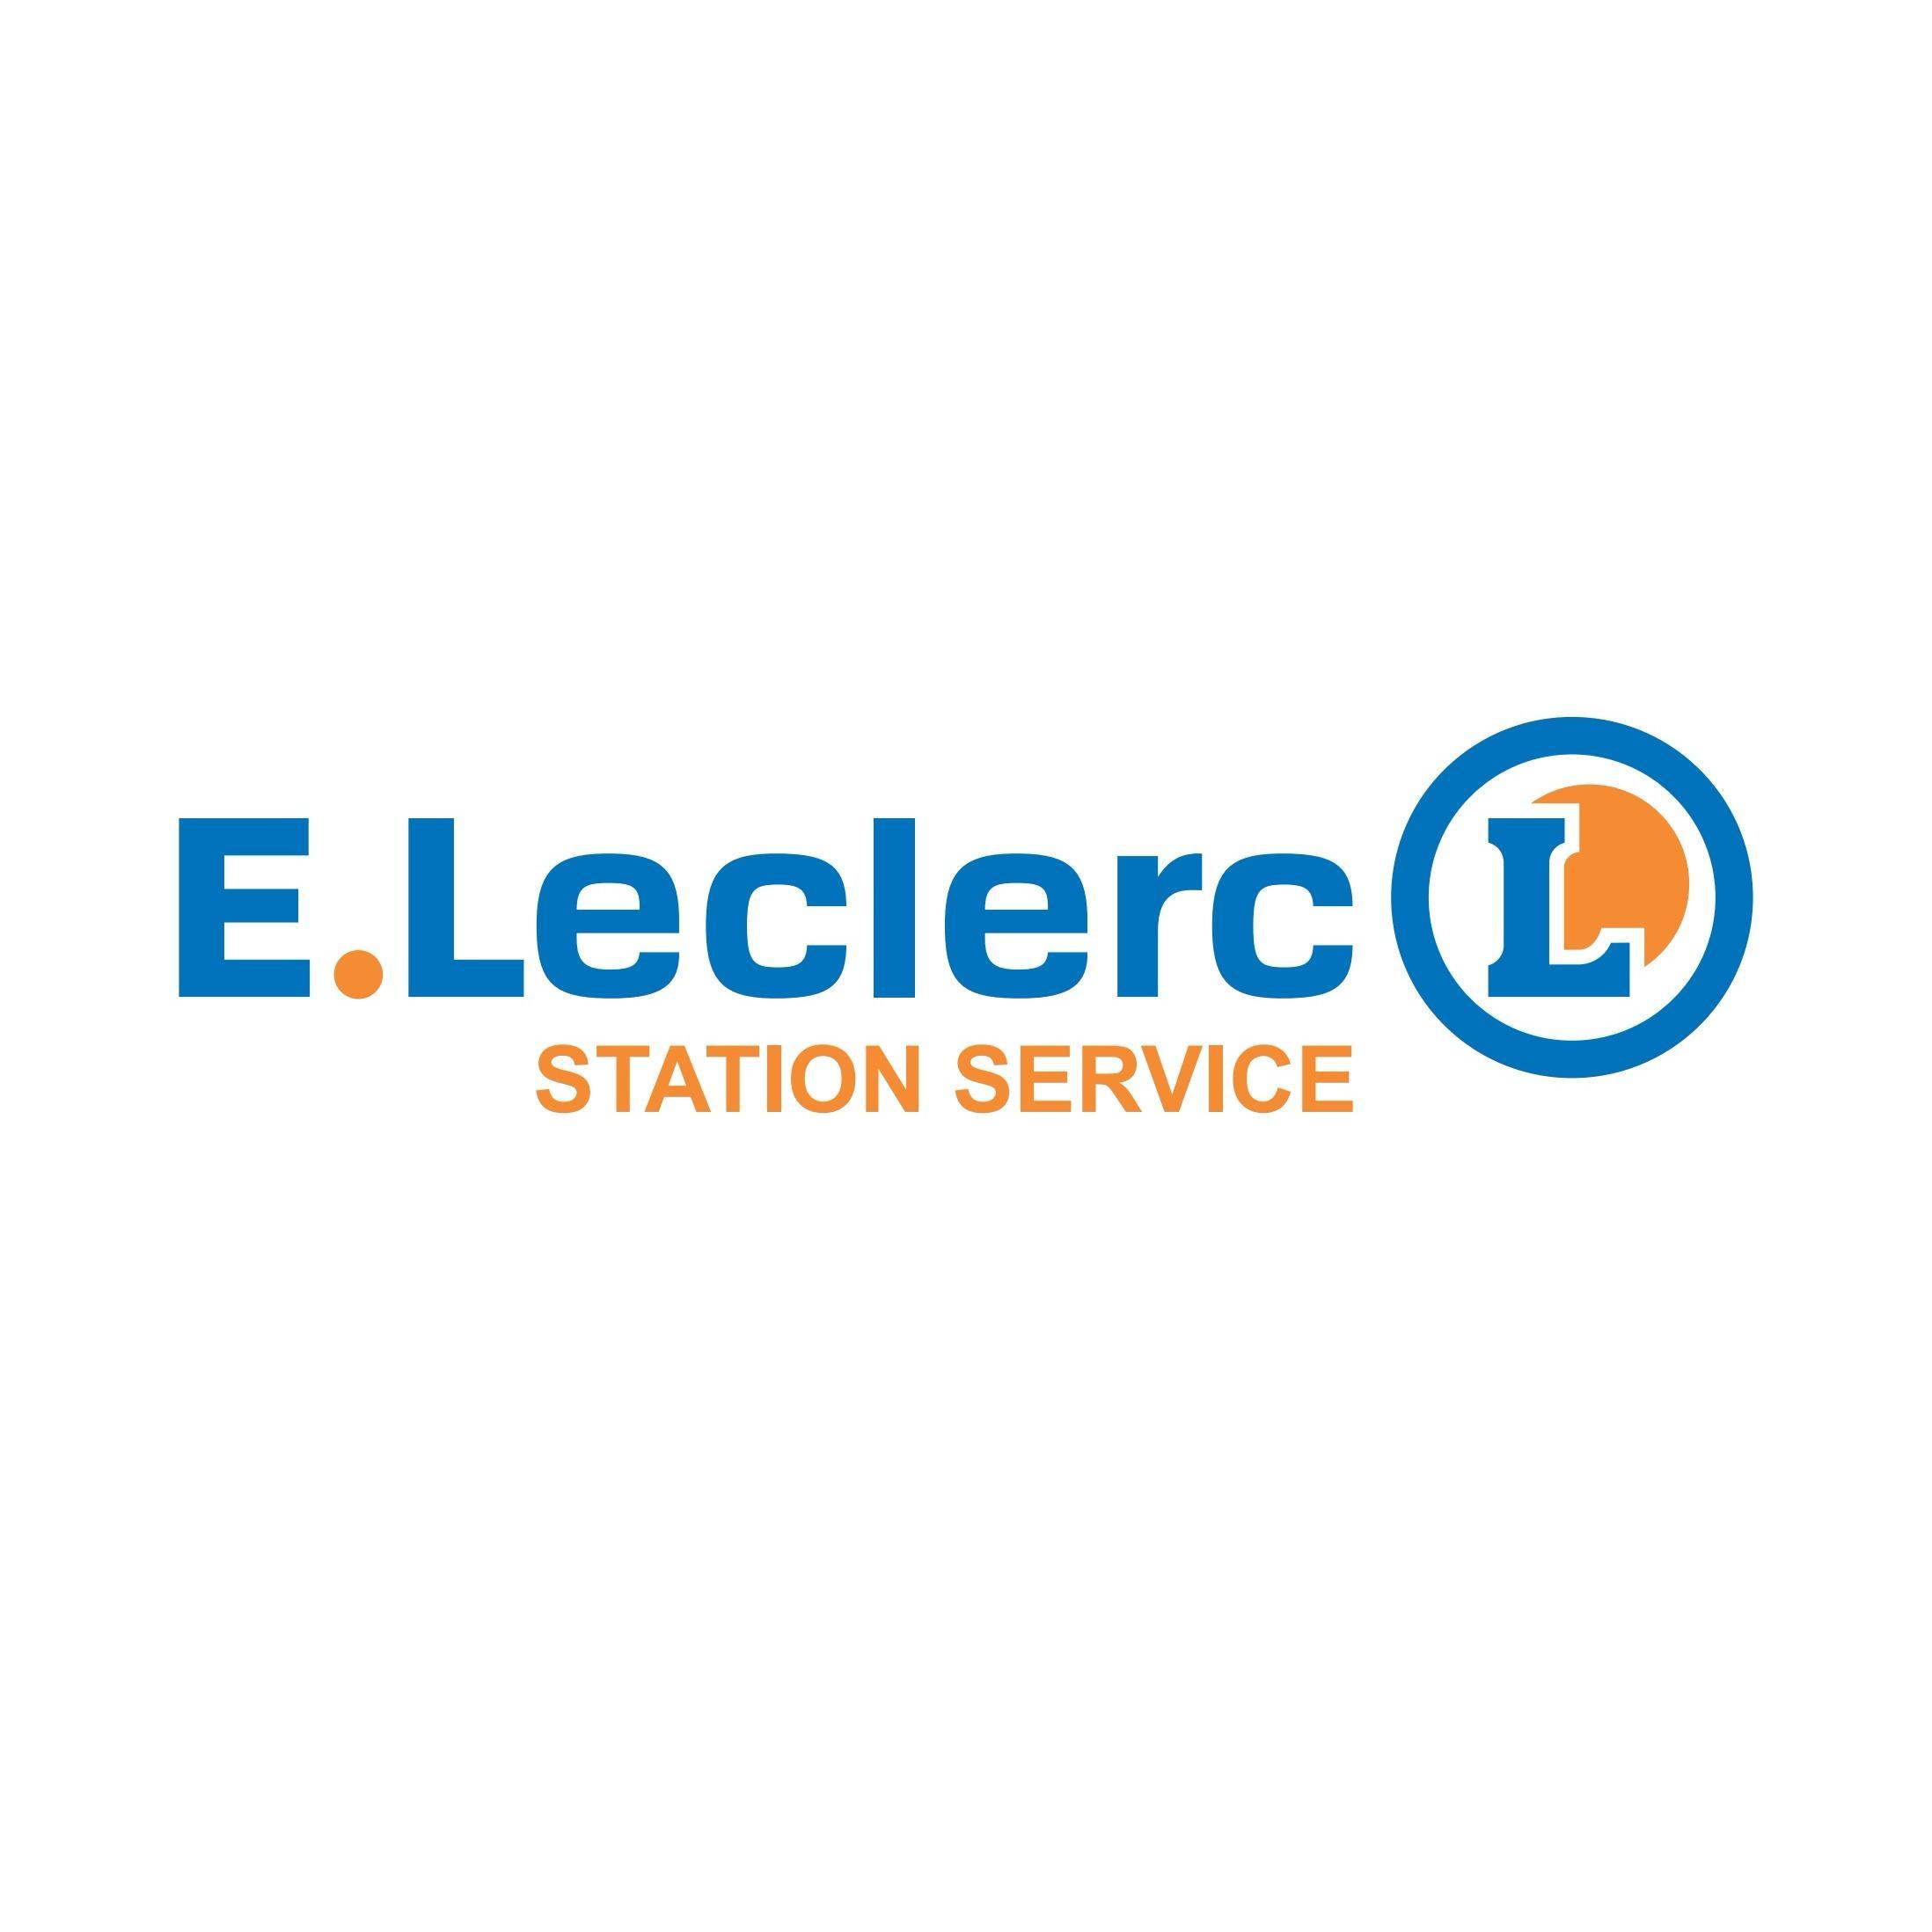 E.leclerc Station Service Eauze